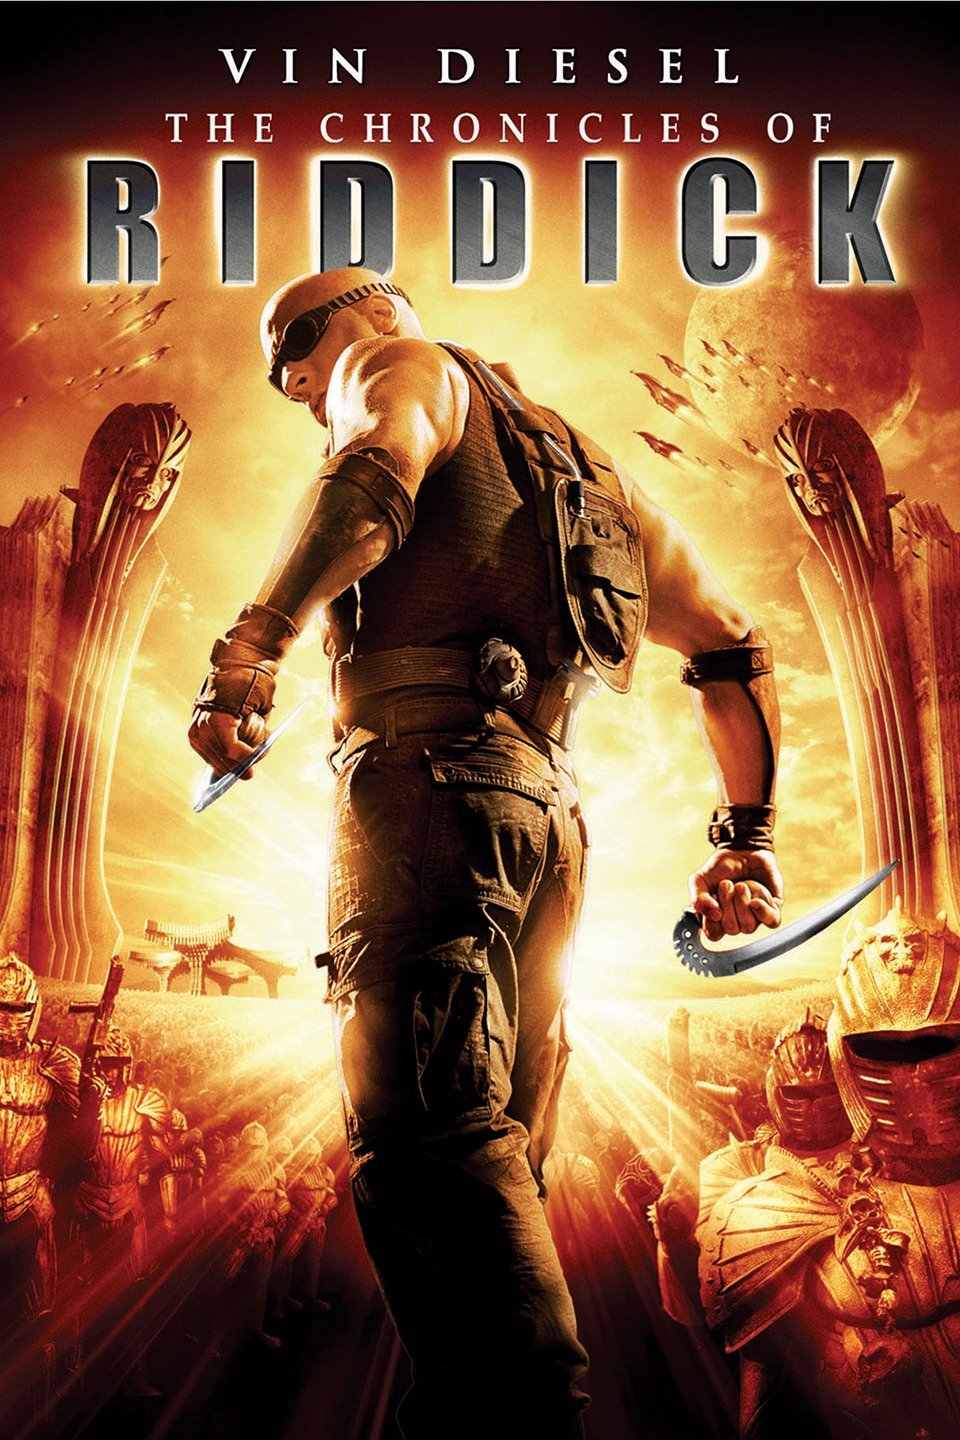 [MINI-HD] The Chronicles Of Riddick (2004) ริดดิค ภาค 2 [720p] [พากย์ไทย 5.1 + เสียงอังกฤษ 5.1] [บรรยายไทย + อังกฤษ] [เสียงไทย + ซับไทย]